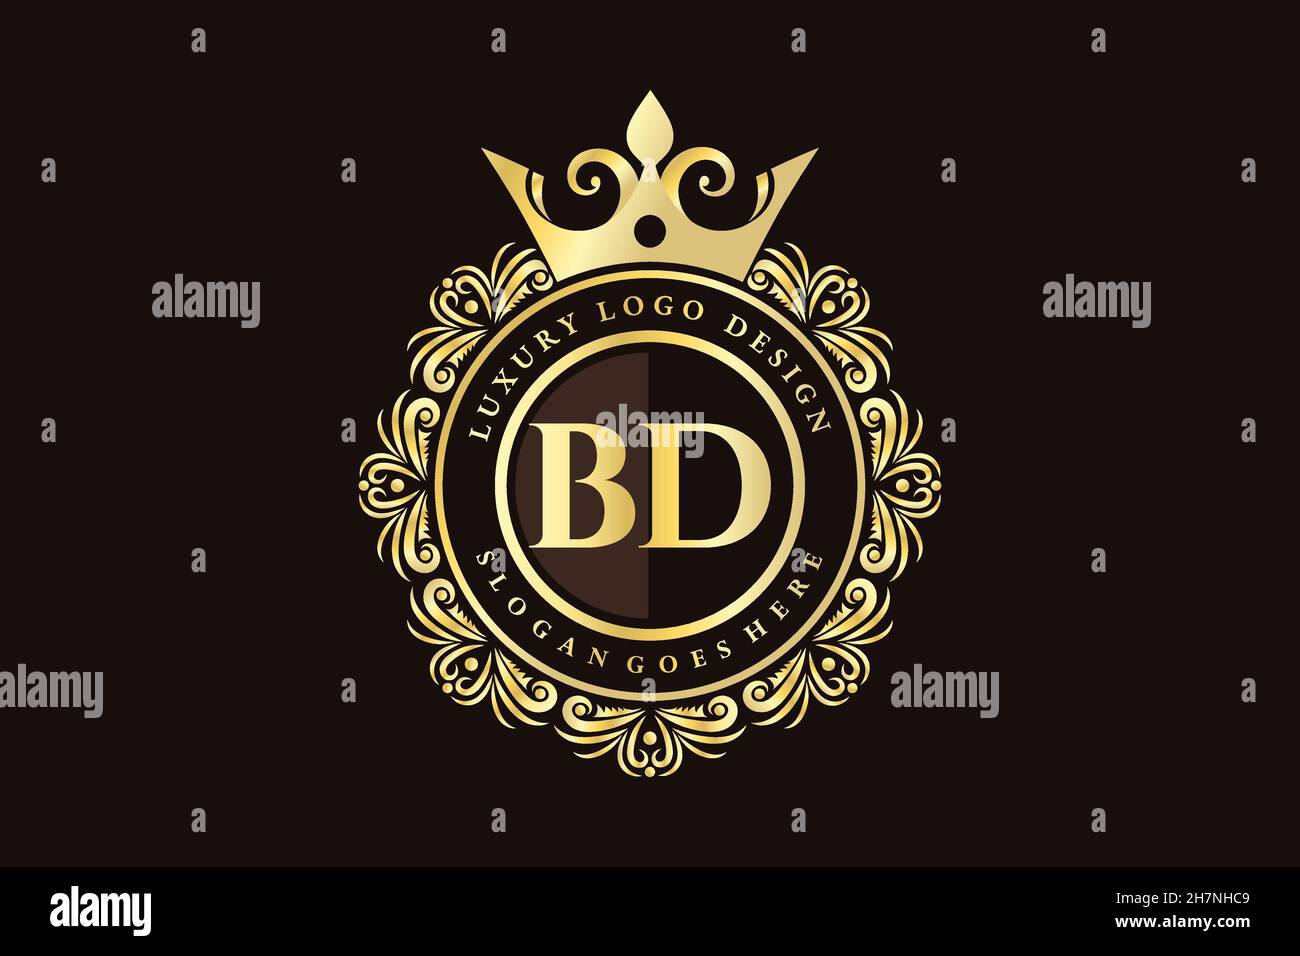 BD Initial Letter Gold calligraphic feminine floral hand drawn heraldic monogram antique vintage style luxury logo design Premium Stock Vector